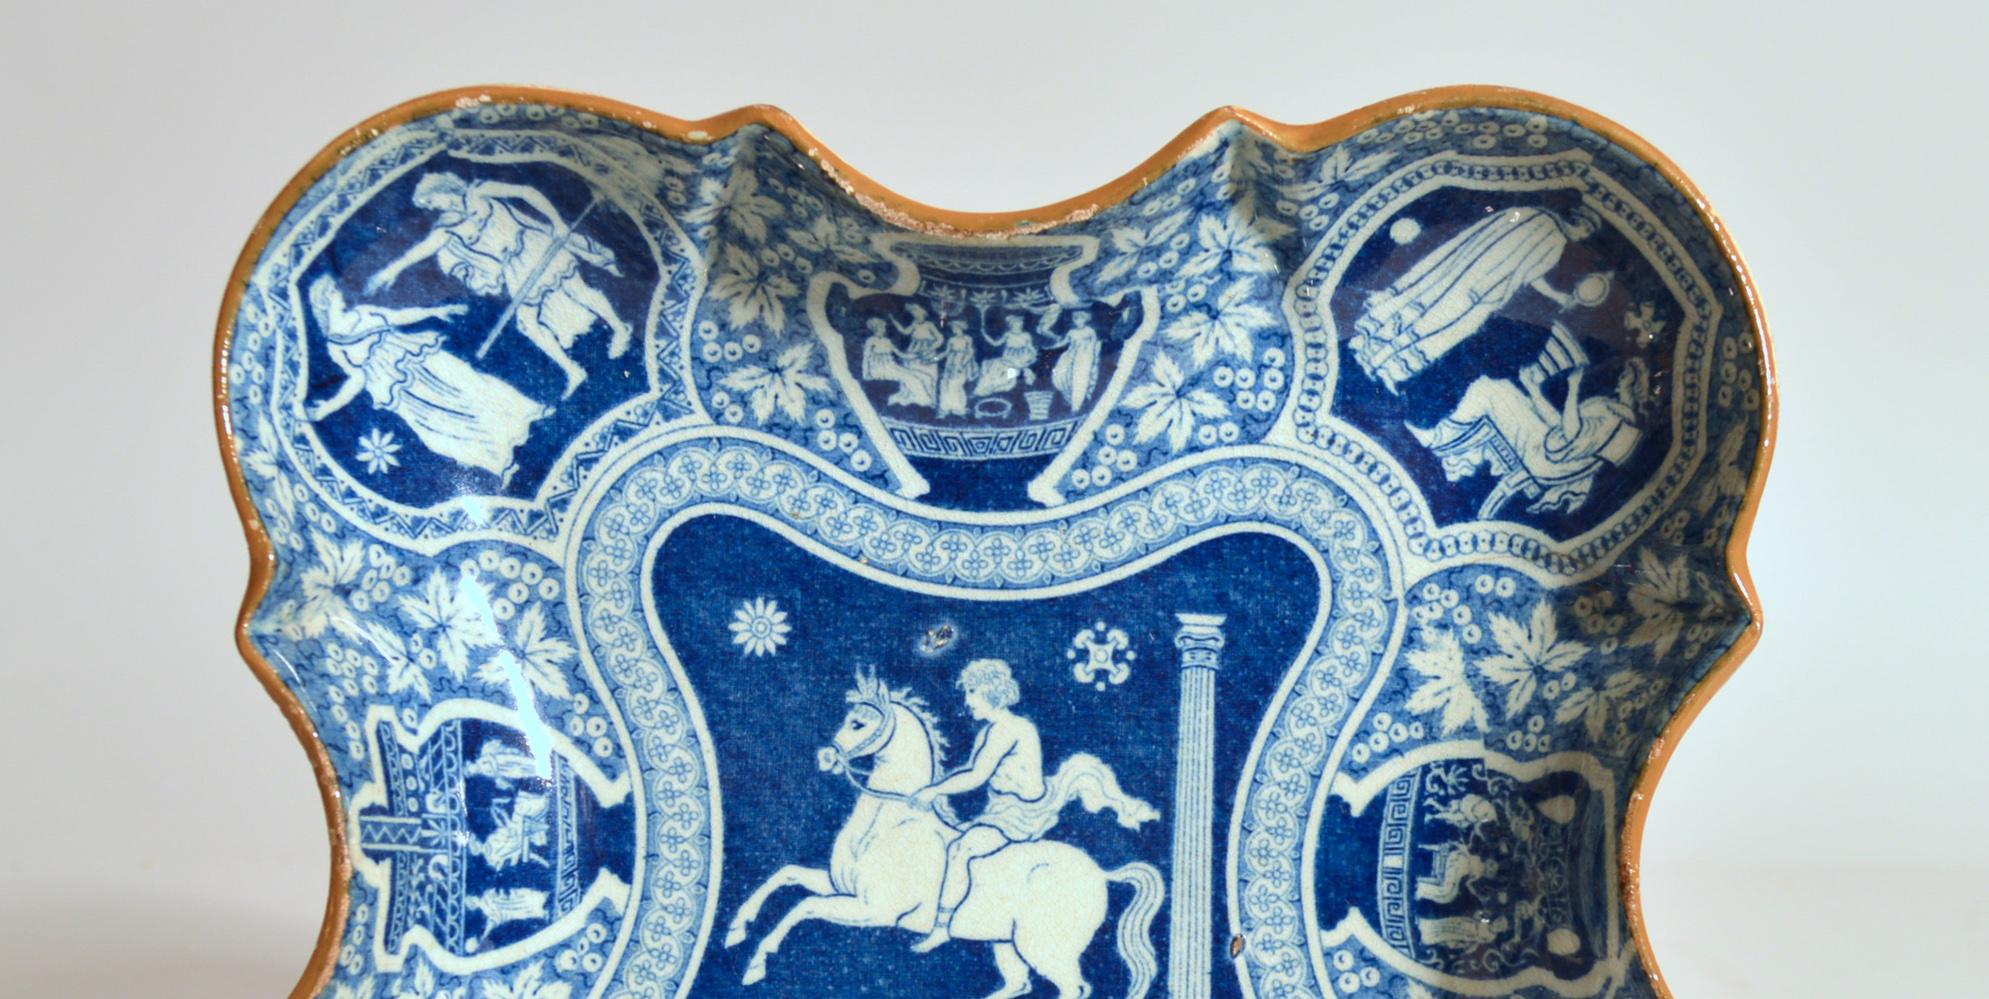 Plat à dessert néoclassique à motif grec bleu de Spode Pottery,
vers 1810

Le plat à dessert en forme de poterie à motif grec de Spode pearlware présente un panneau central avec un cavalier sur un cheval cabré ; des panneaux au bord des urnes et